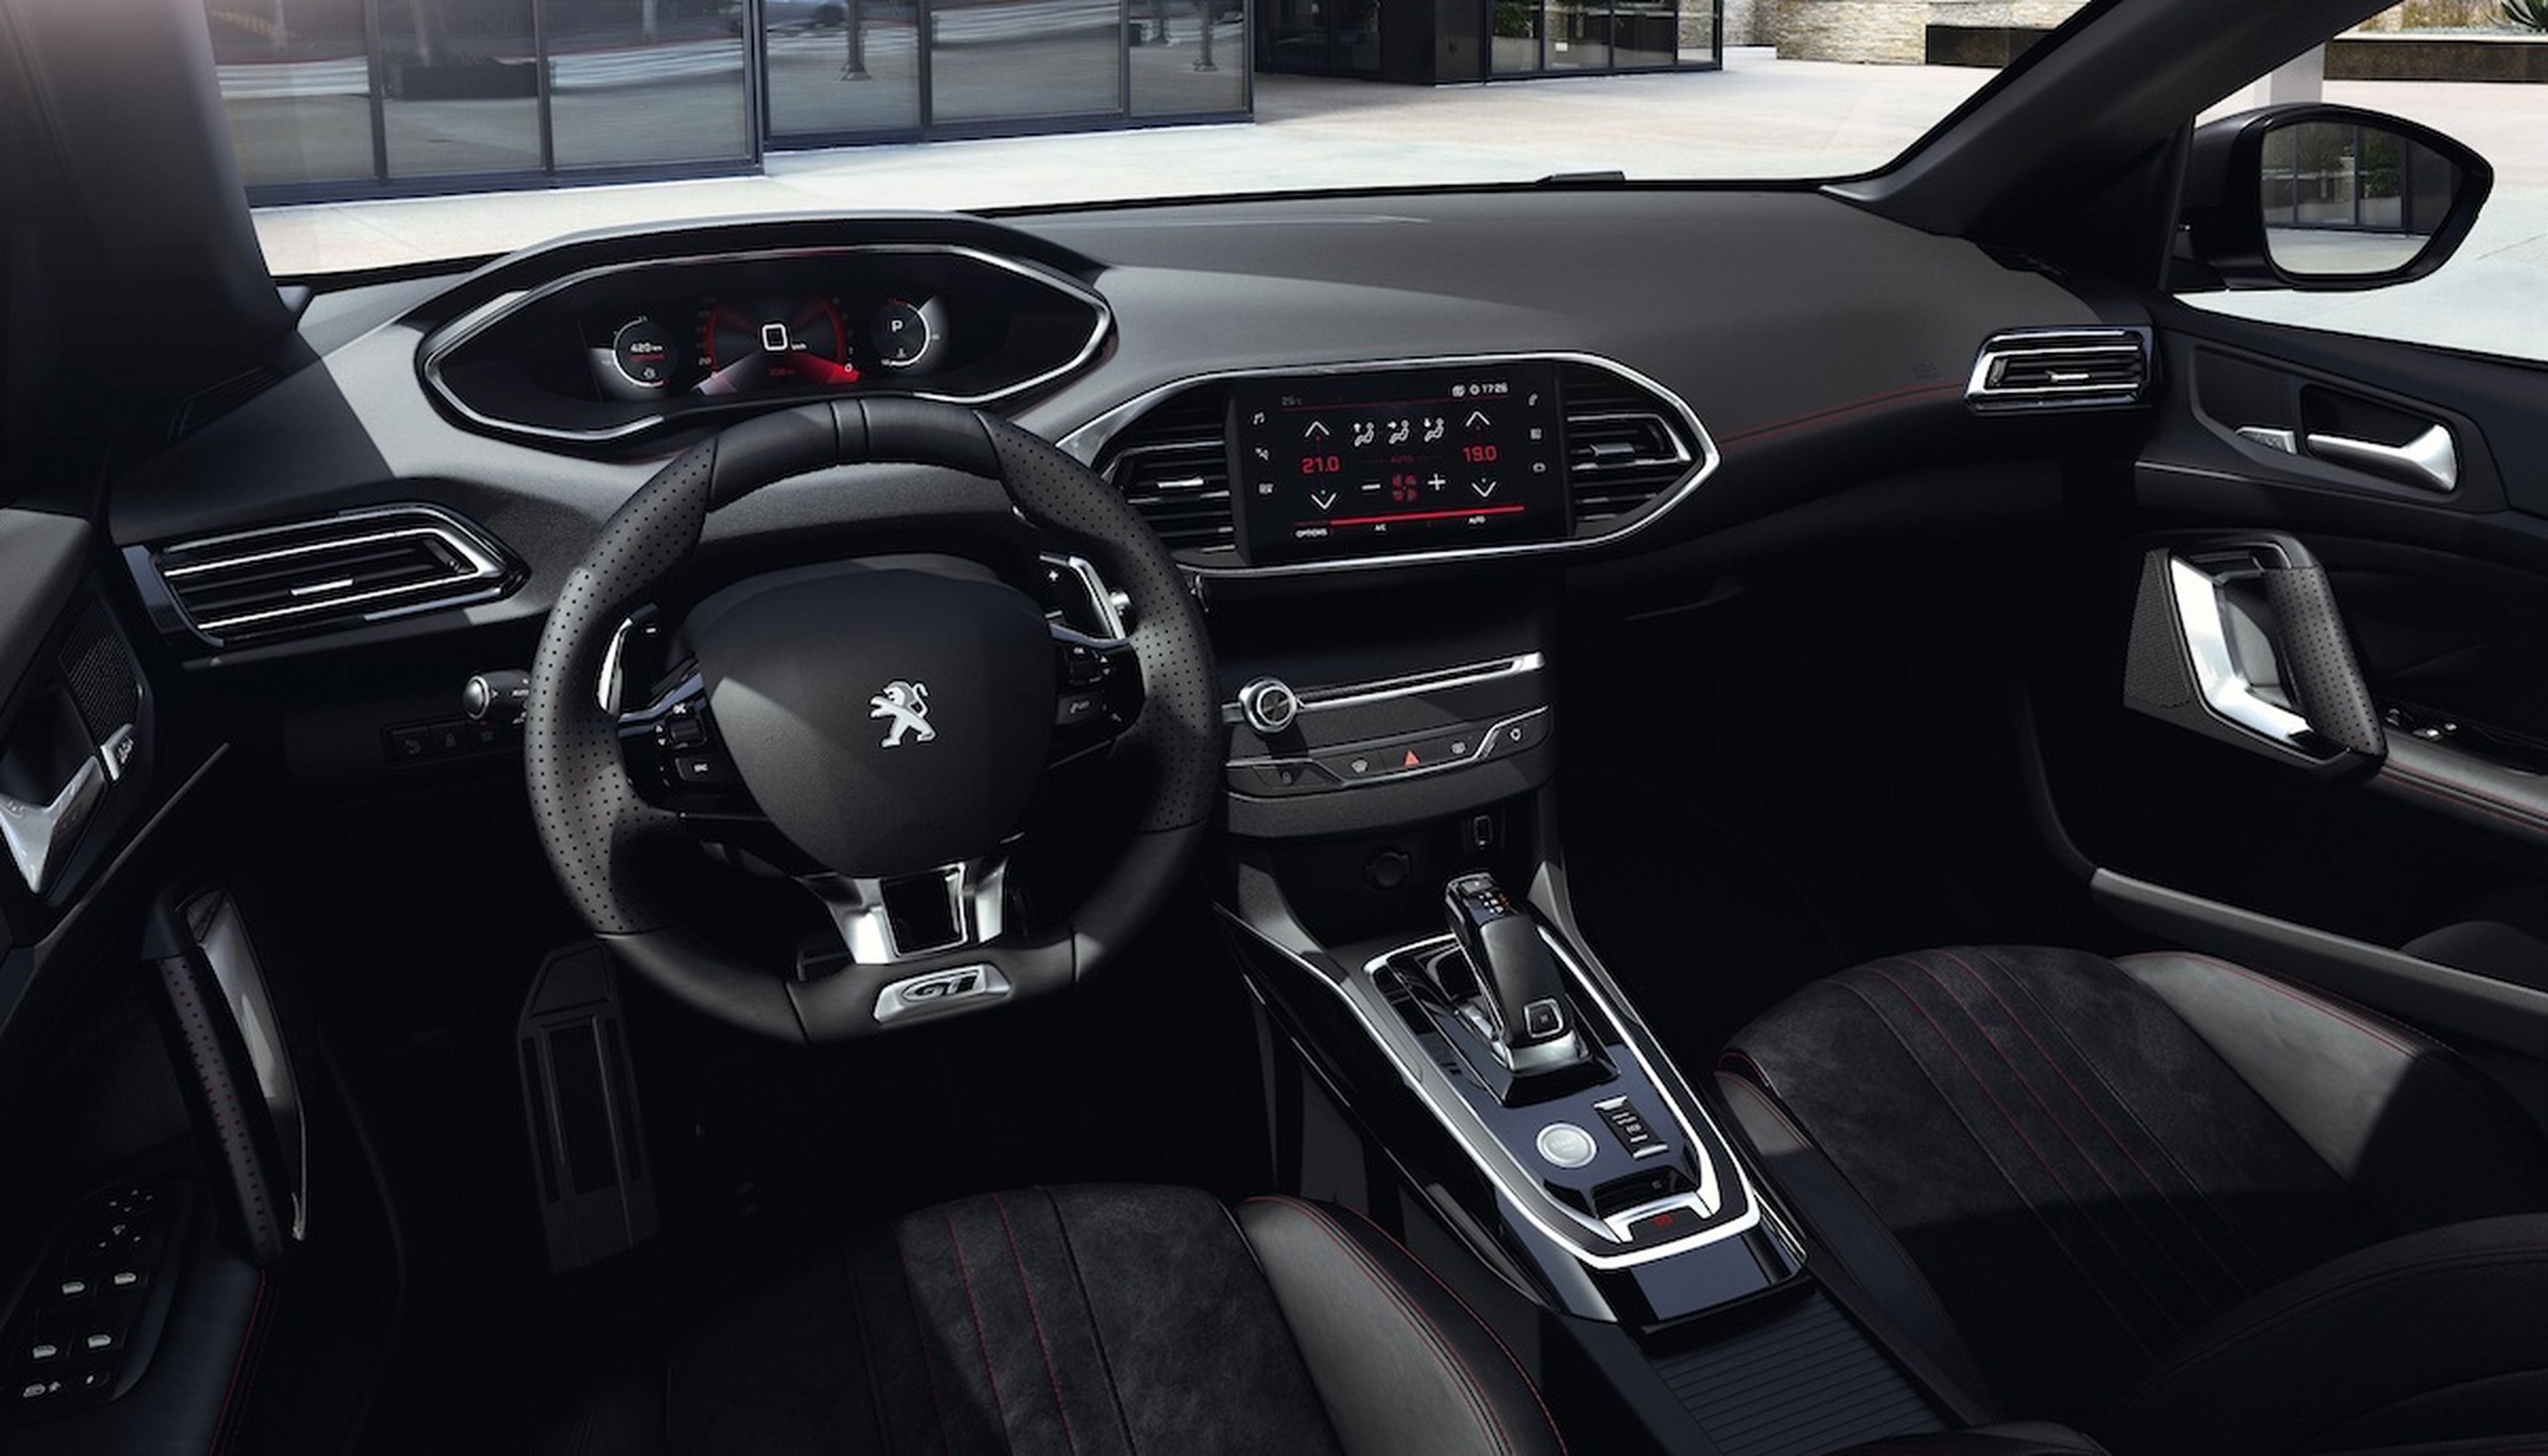 Peugeot 308 2020 interior